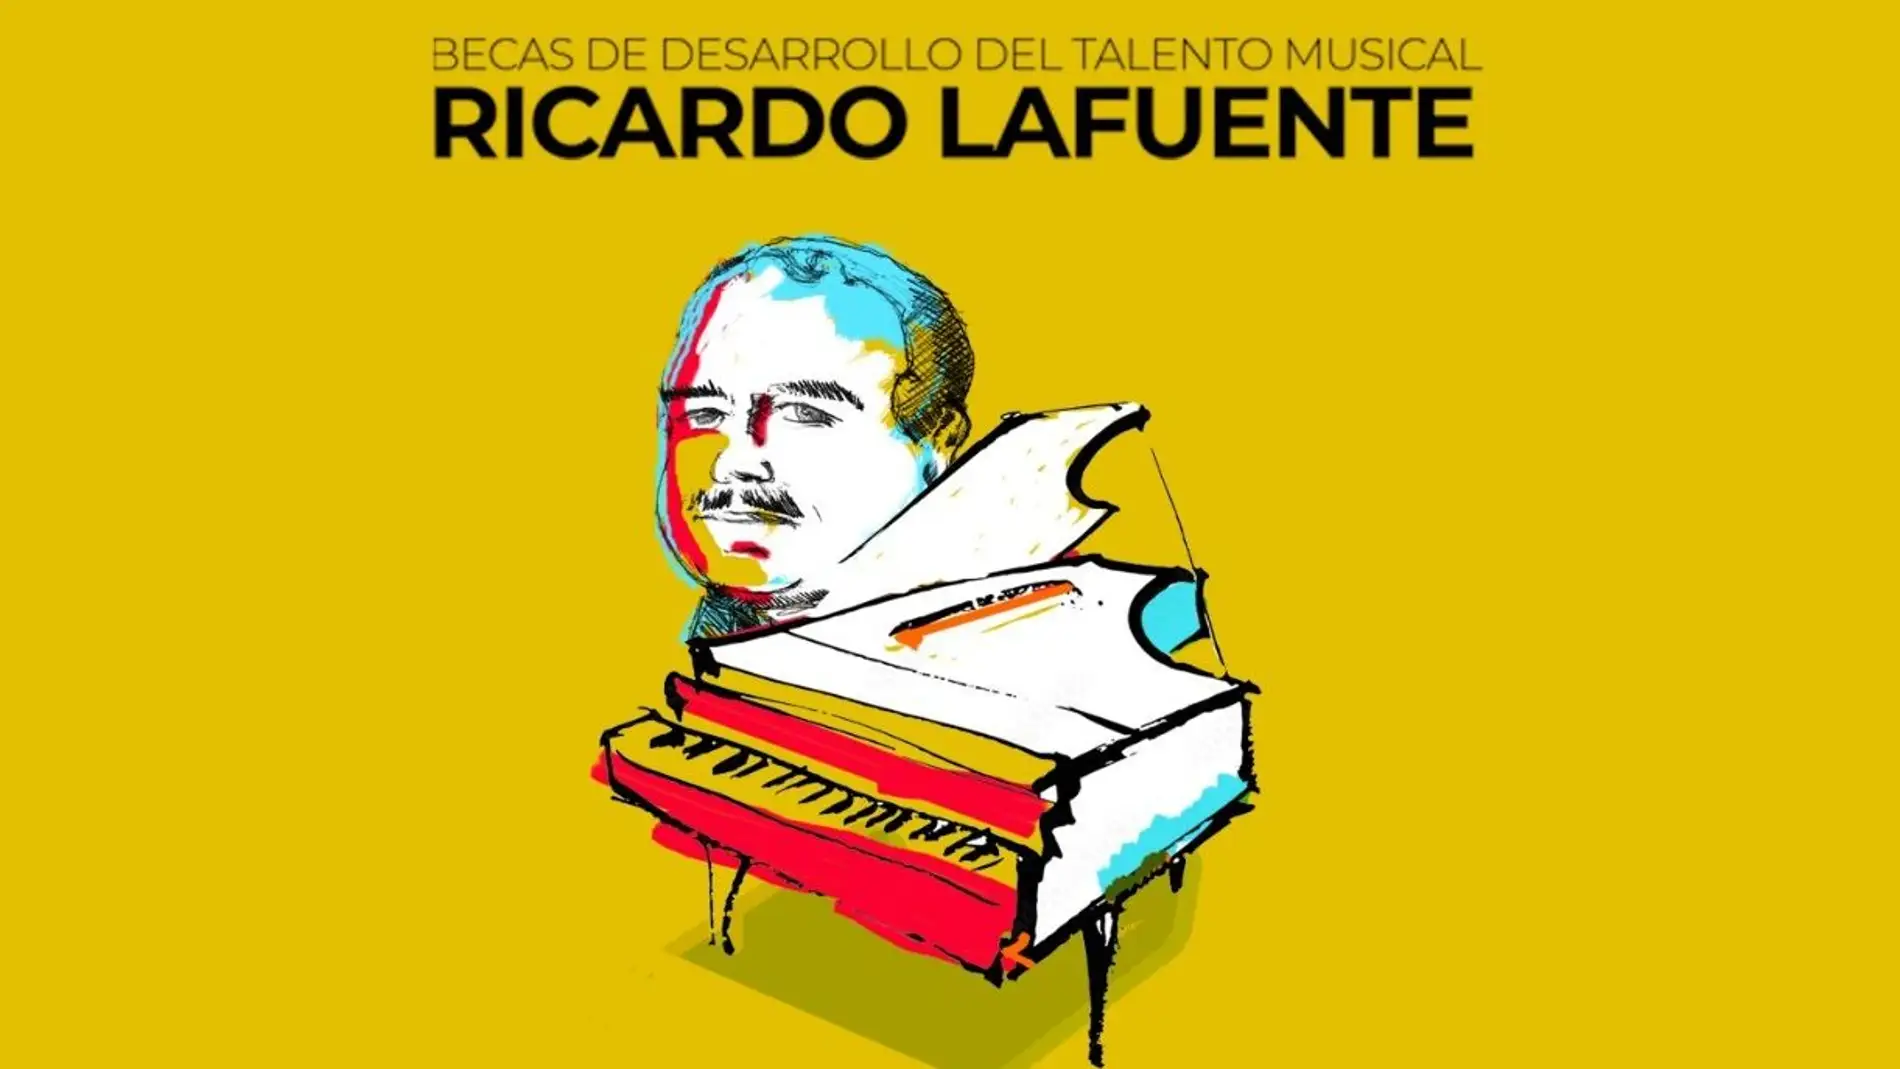 Primera edición en Torrevieja de las becas de desarrollo talento musical "Ricardo Lafuente Aguado"    